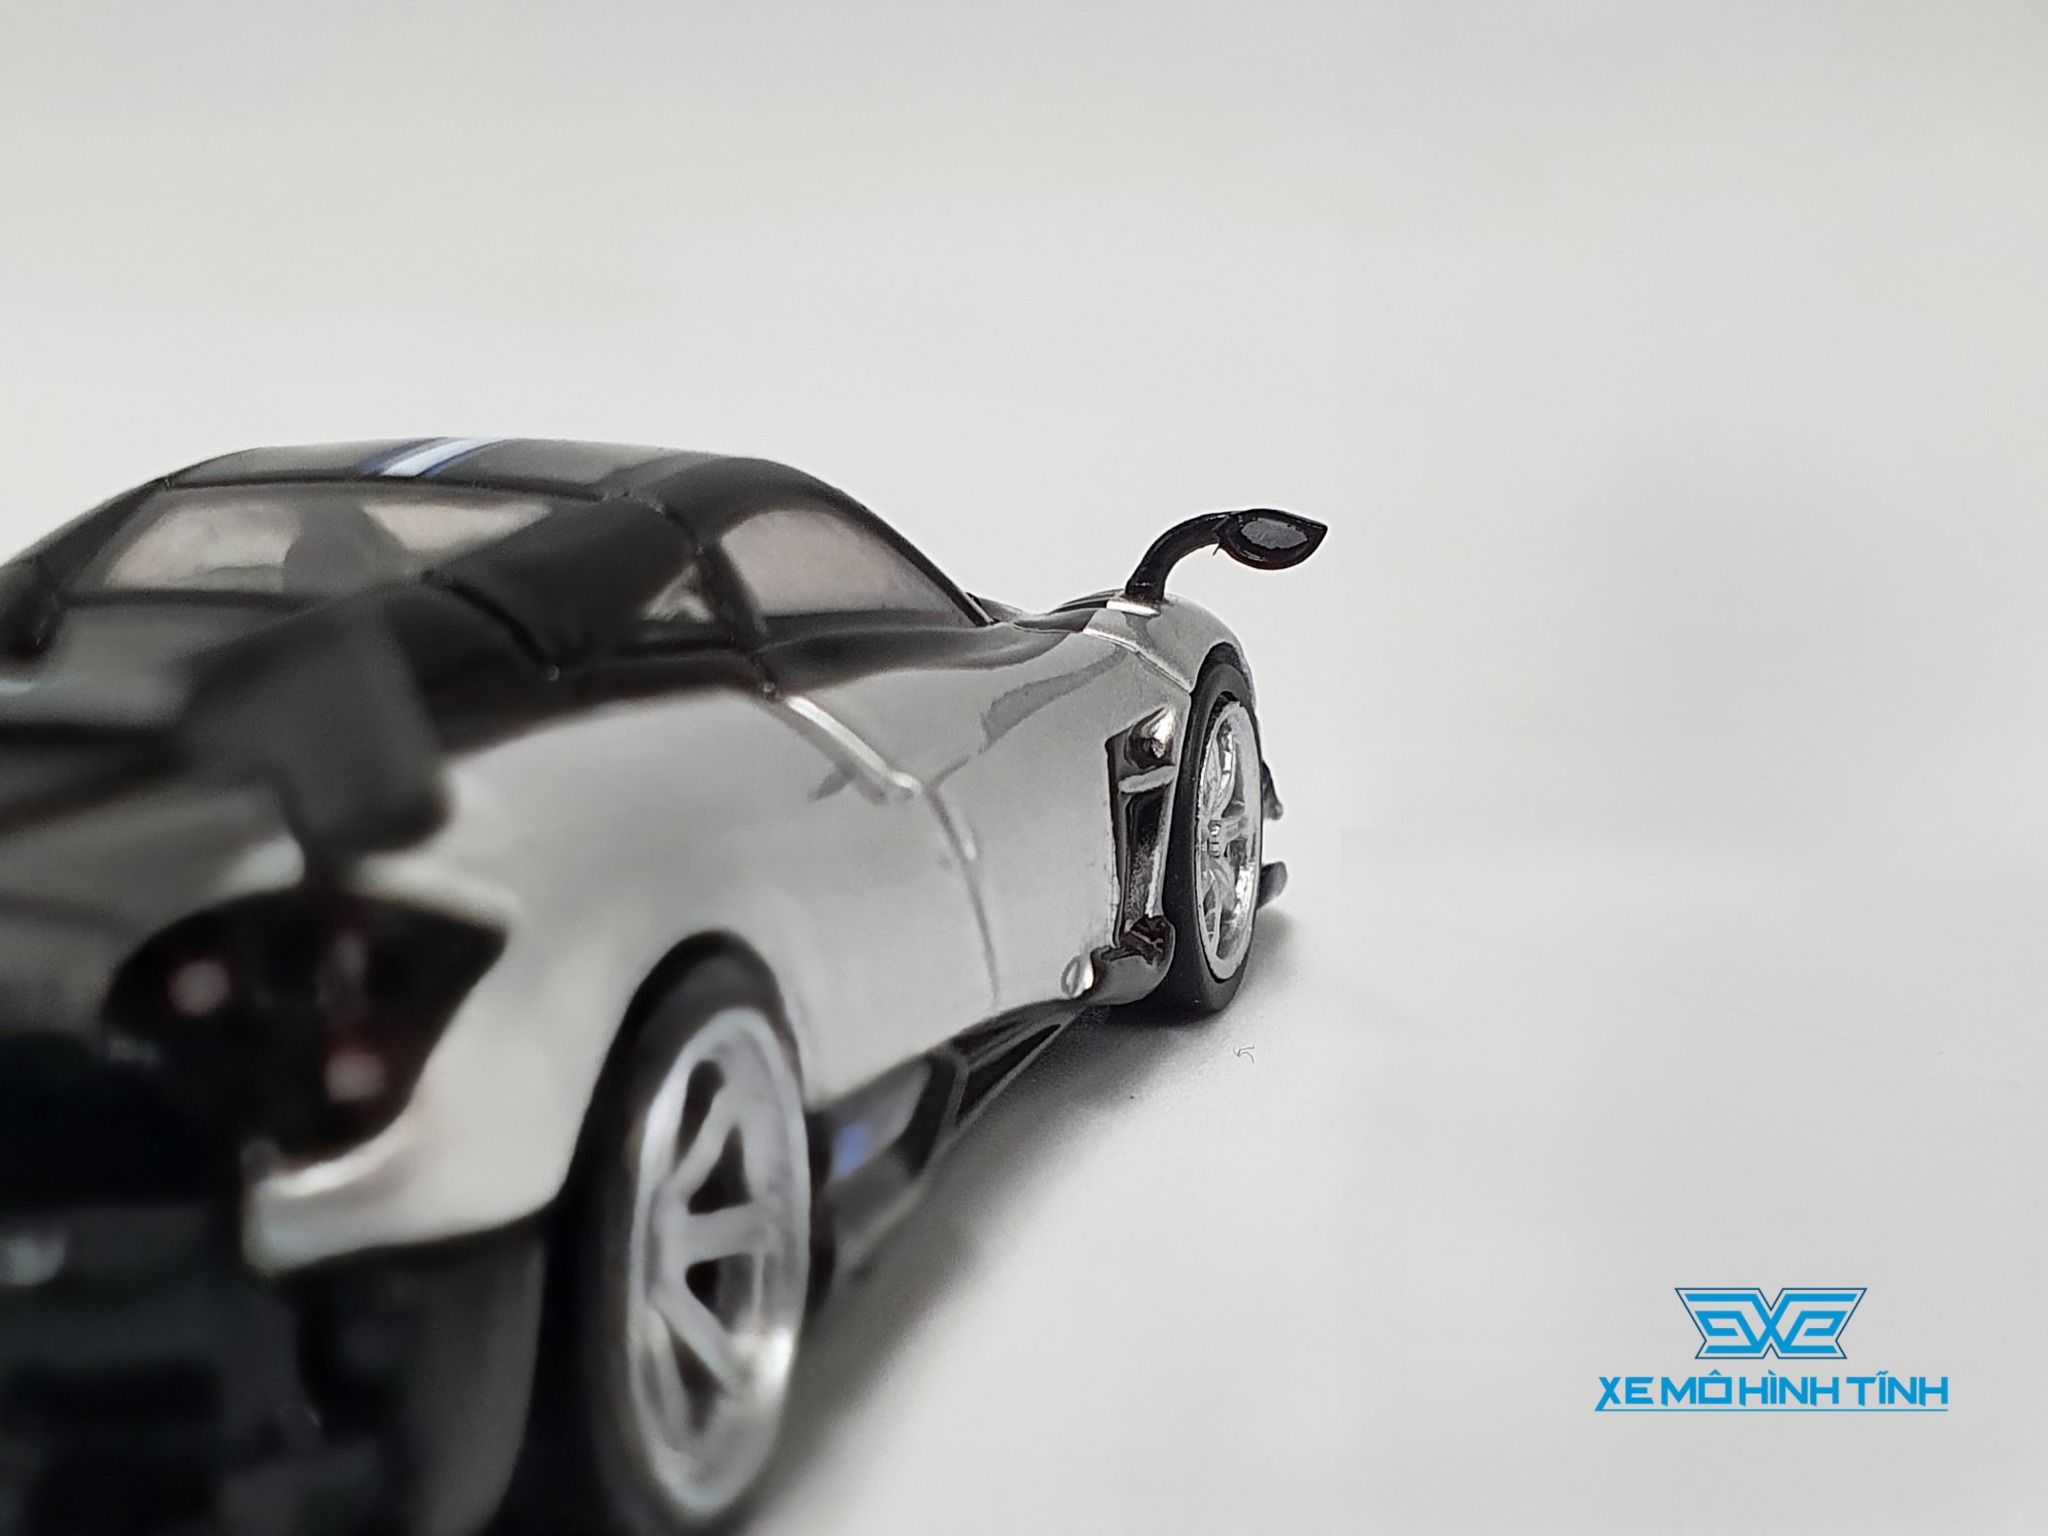 Pagani Huayra BC, mô hình 1:64, Tarmac Works, Bạc: Xem ngay mô hình xe Pagani Huayra BC độc đáo với tỉ lệ mô hình 1:64, được sản xuất với độ hoàn thiện cao và màu sắc bạc bắt mắt. Tarmac Works đã tạo ra một sản phẩm đẹp mắt và chất lượng cho những tín đồ mô hình ô tô.